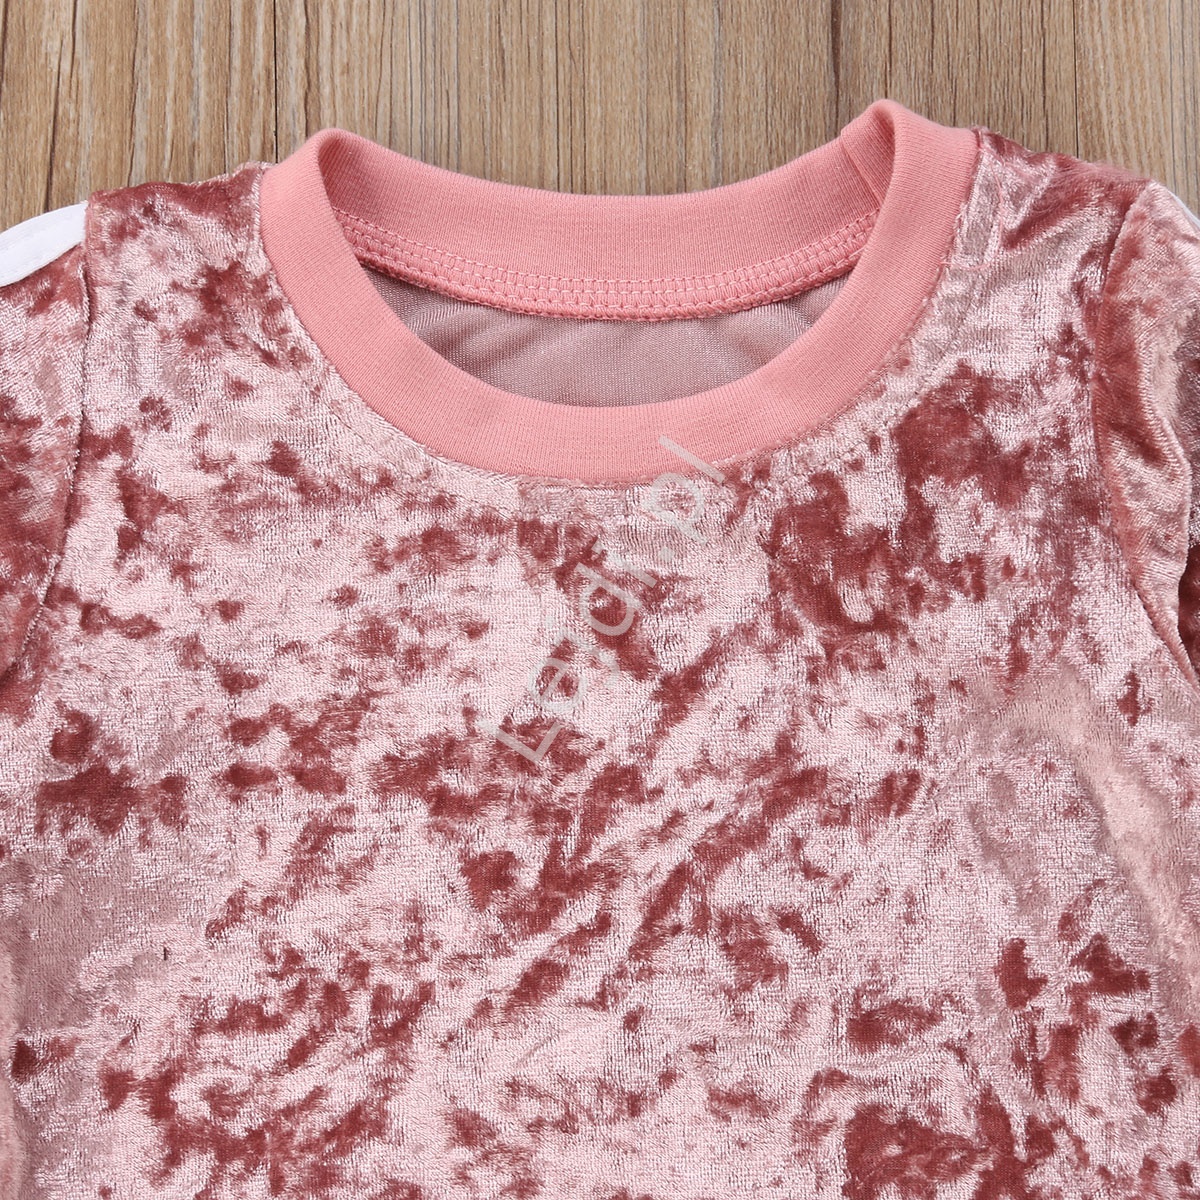 Welurowy dres dla dziewczynki w kolorze brudnego różu 554